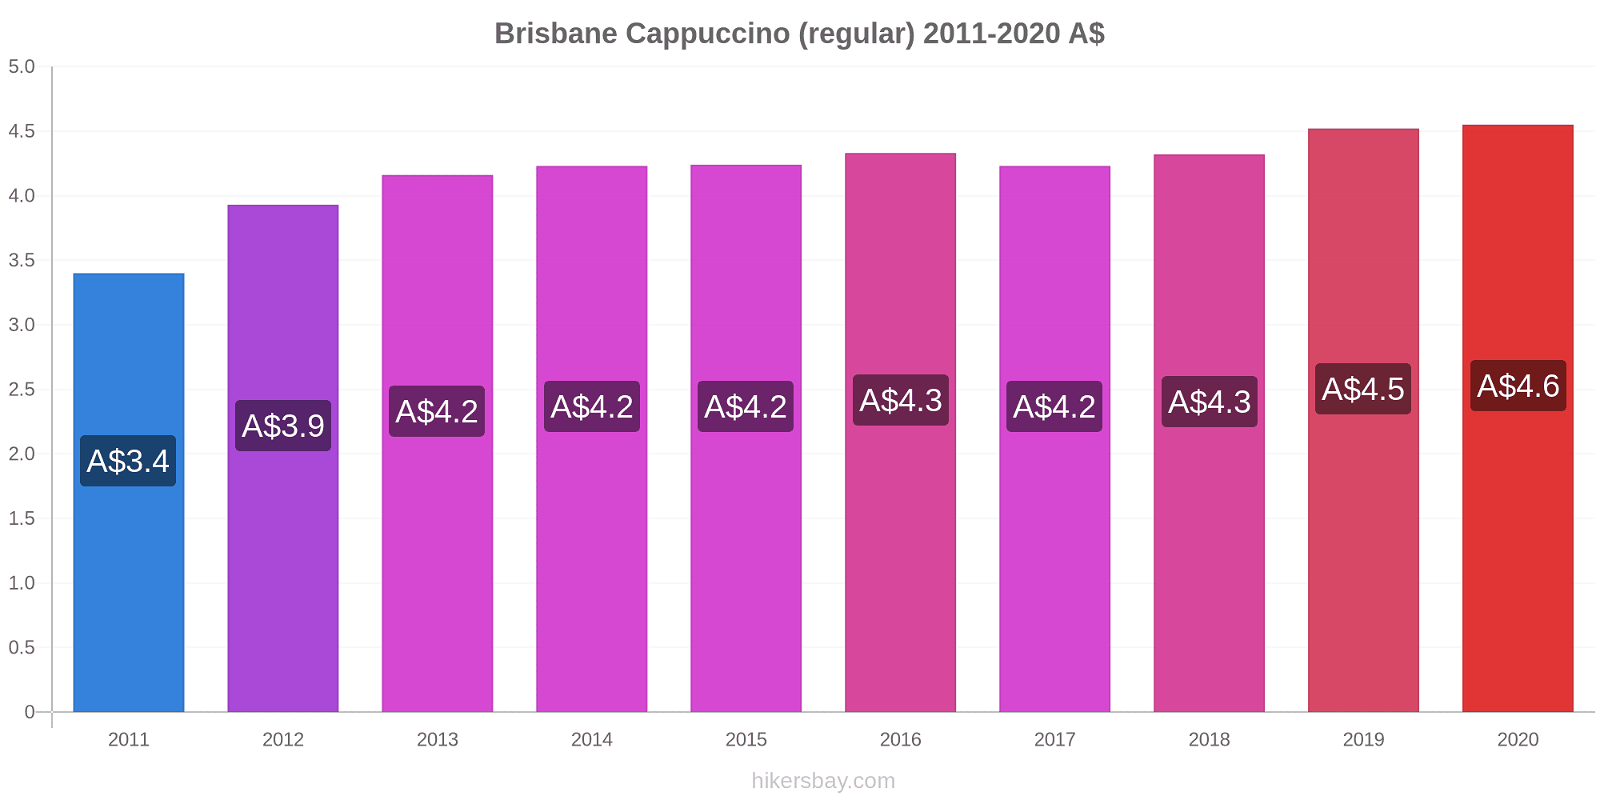 Brisbane price changes Cappuccino (regular) hikersbay.com